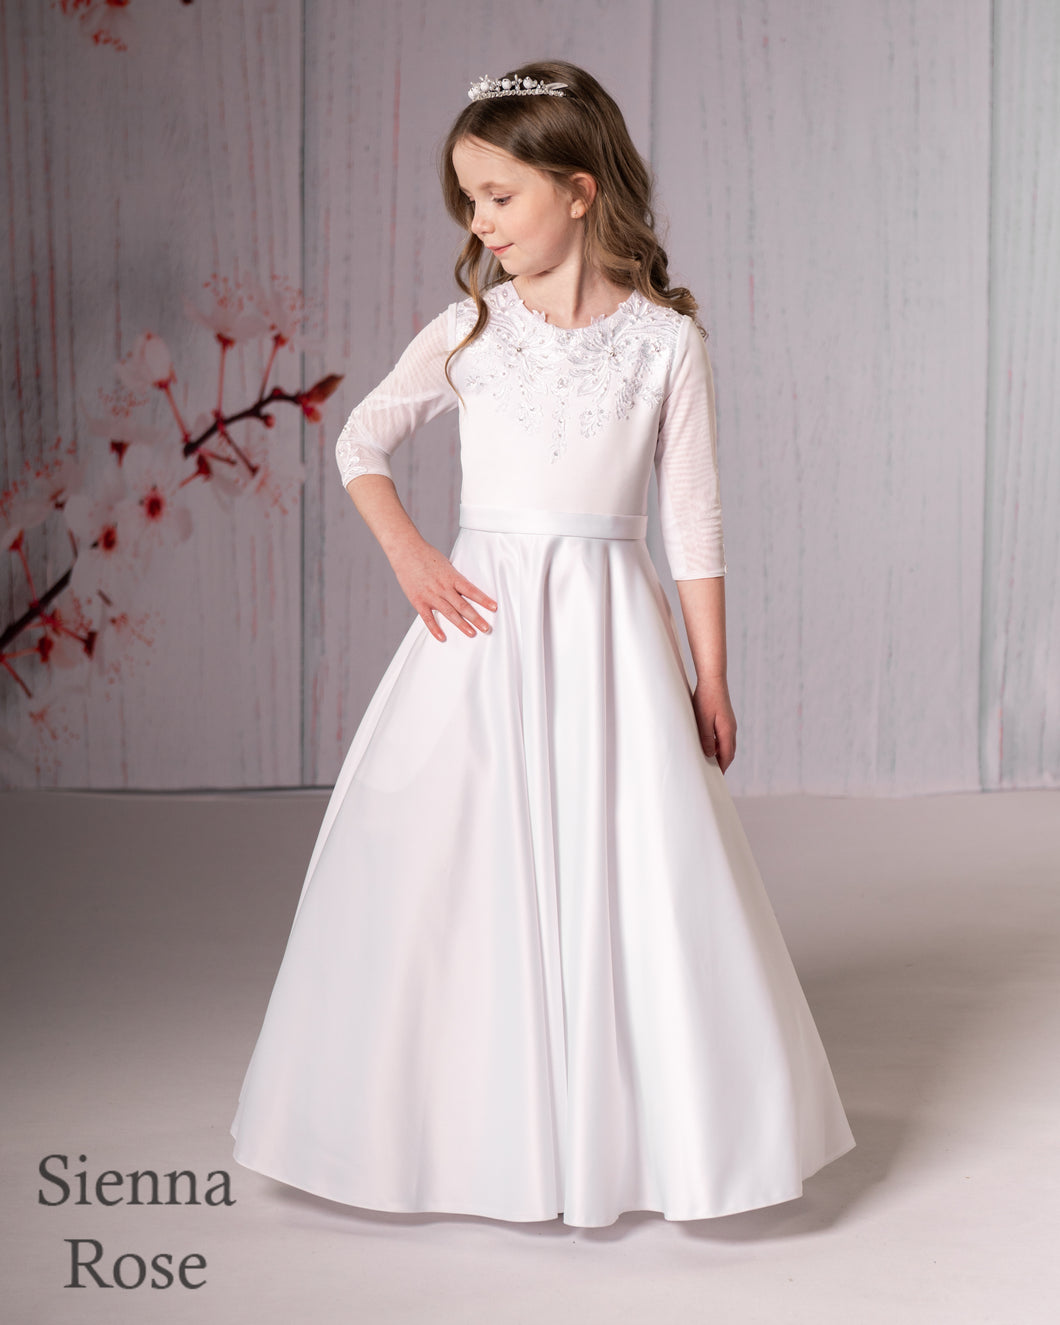 Sienna Rose By Sweetie Pie Girls White Communion Dress:- SR713